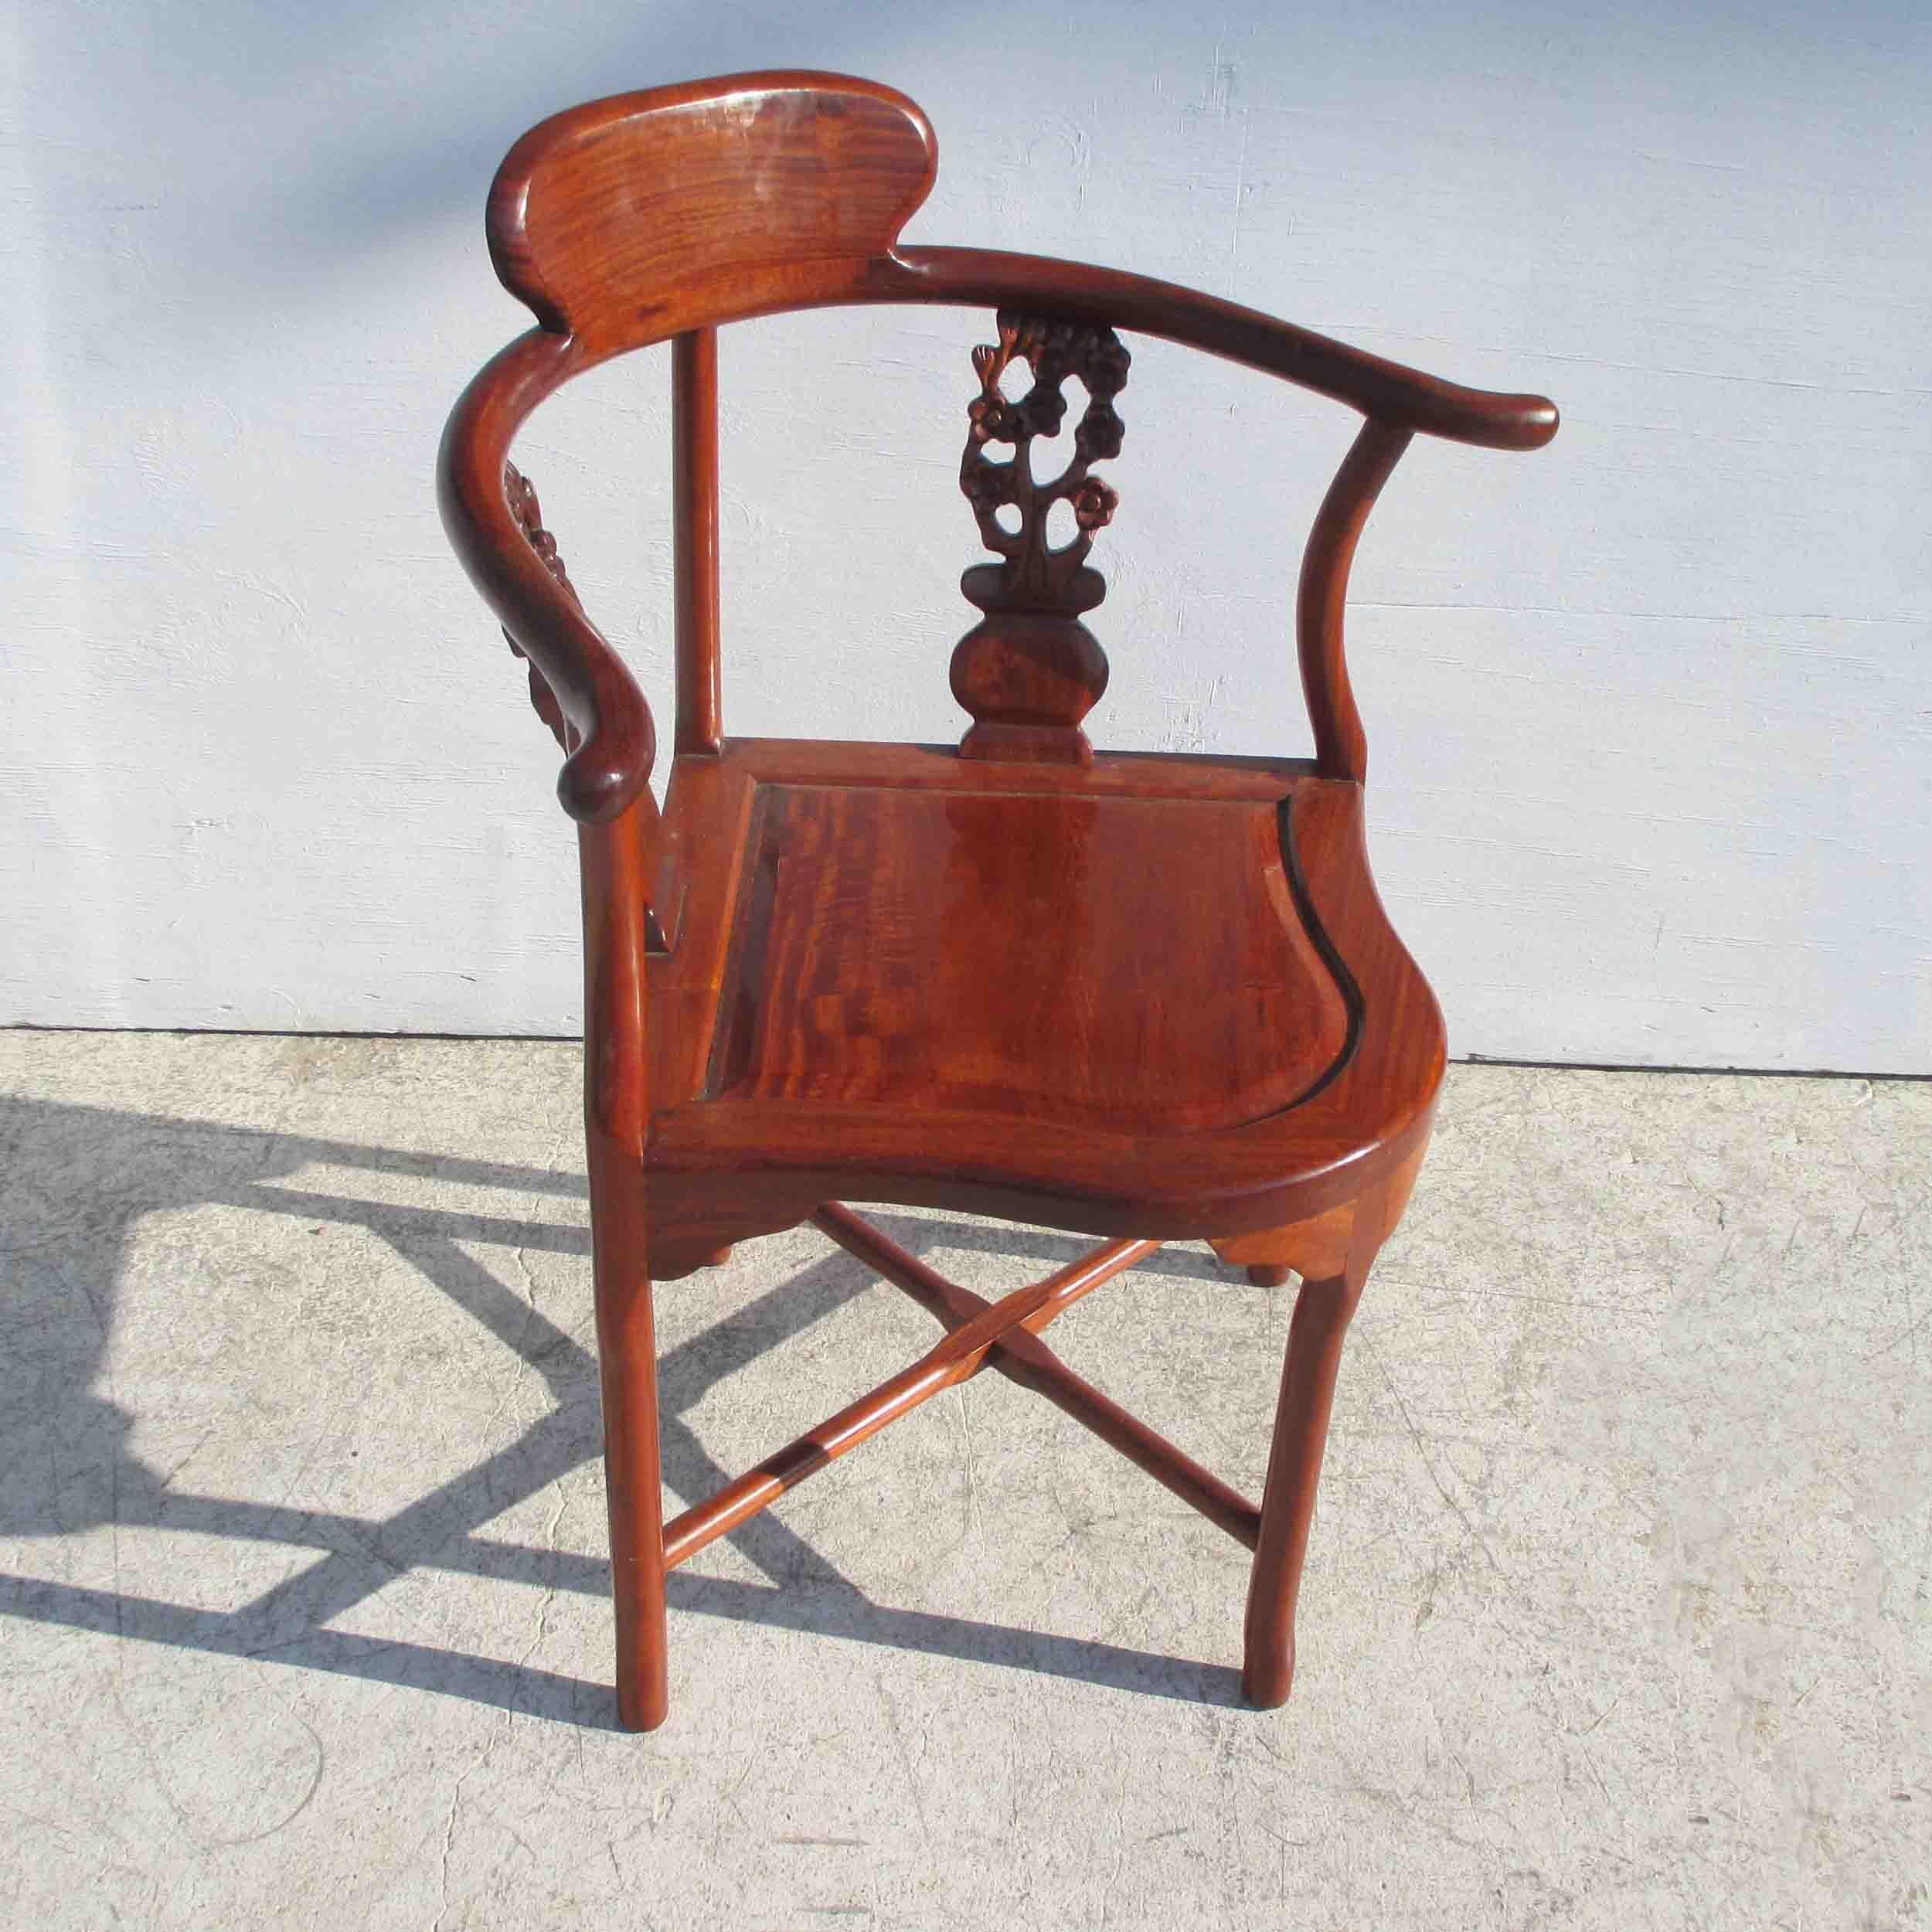 wooden corner chair